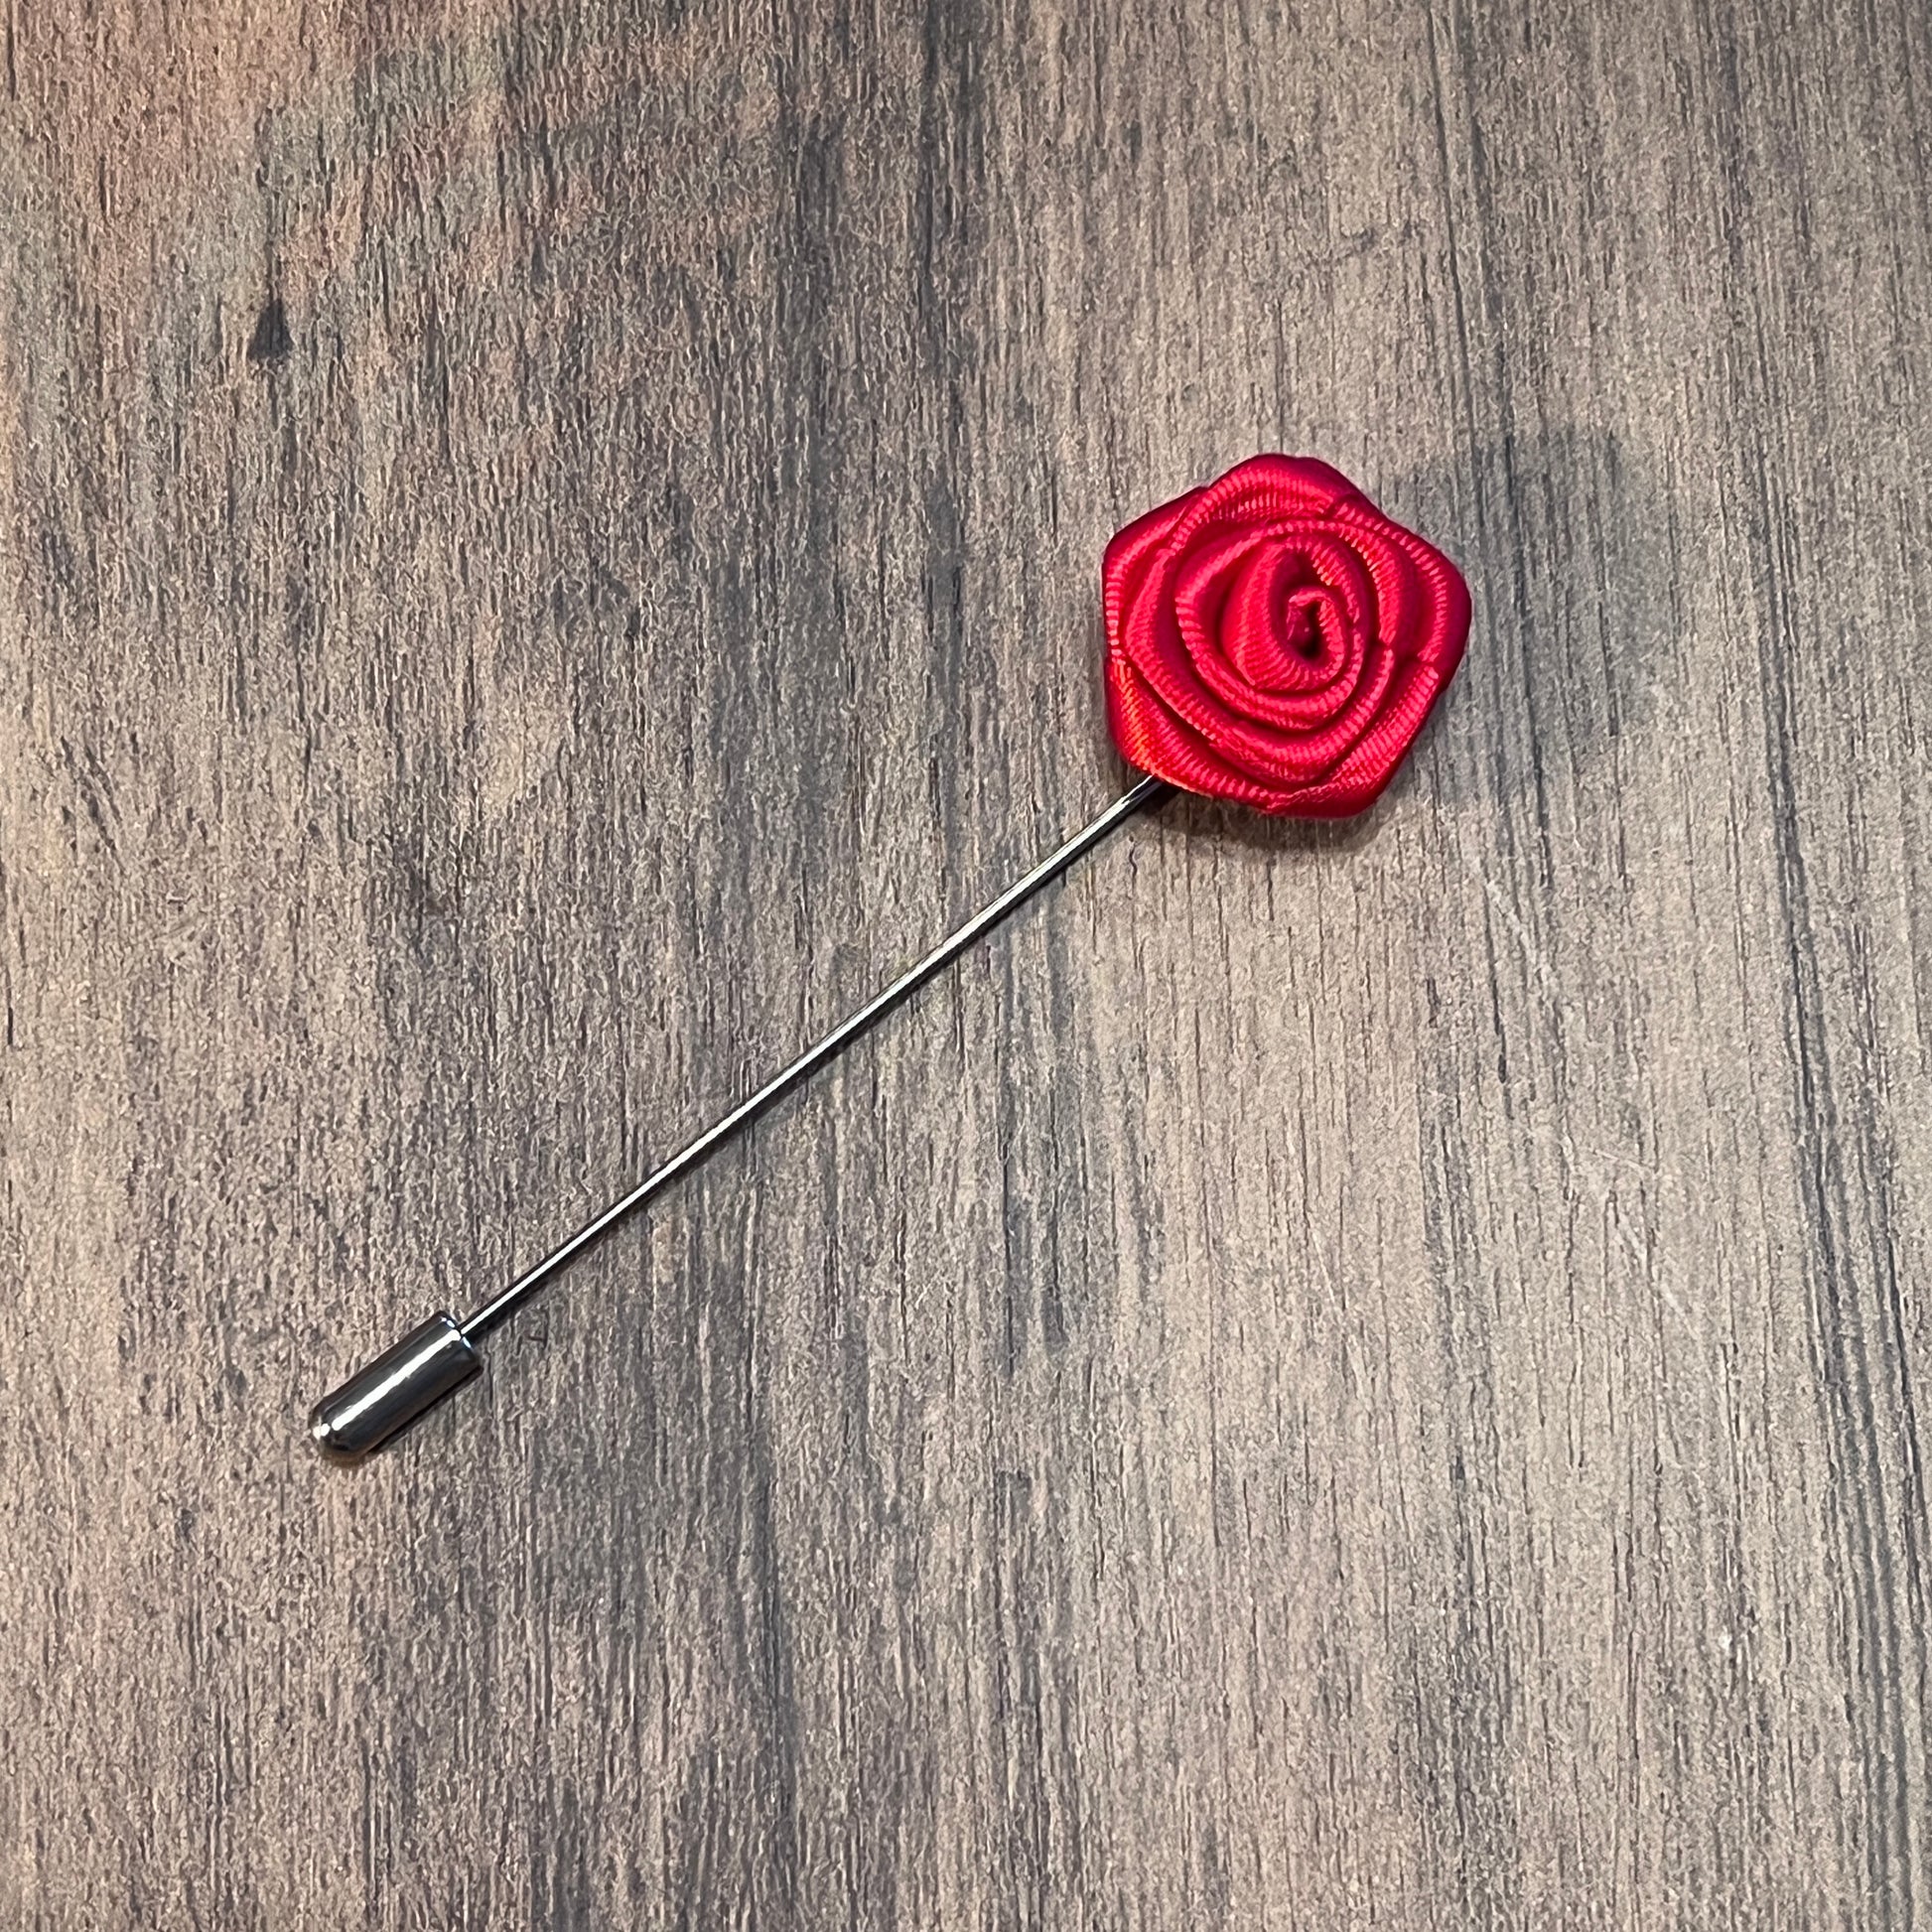 Tasker & Shaw | Luxury Menswear | Red rose flower lapel pin